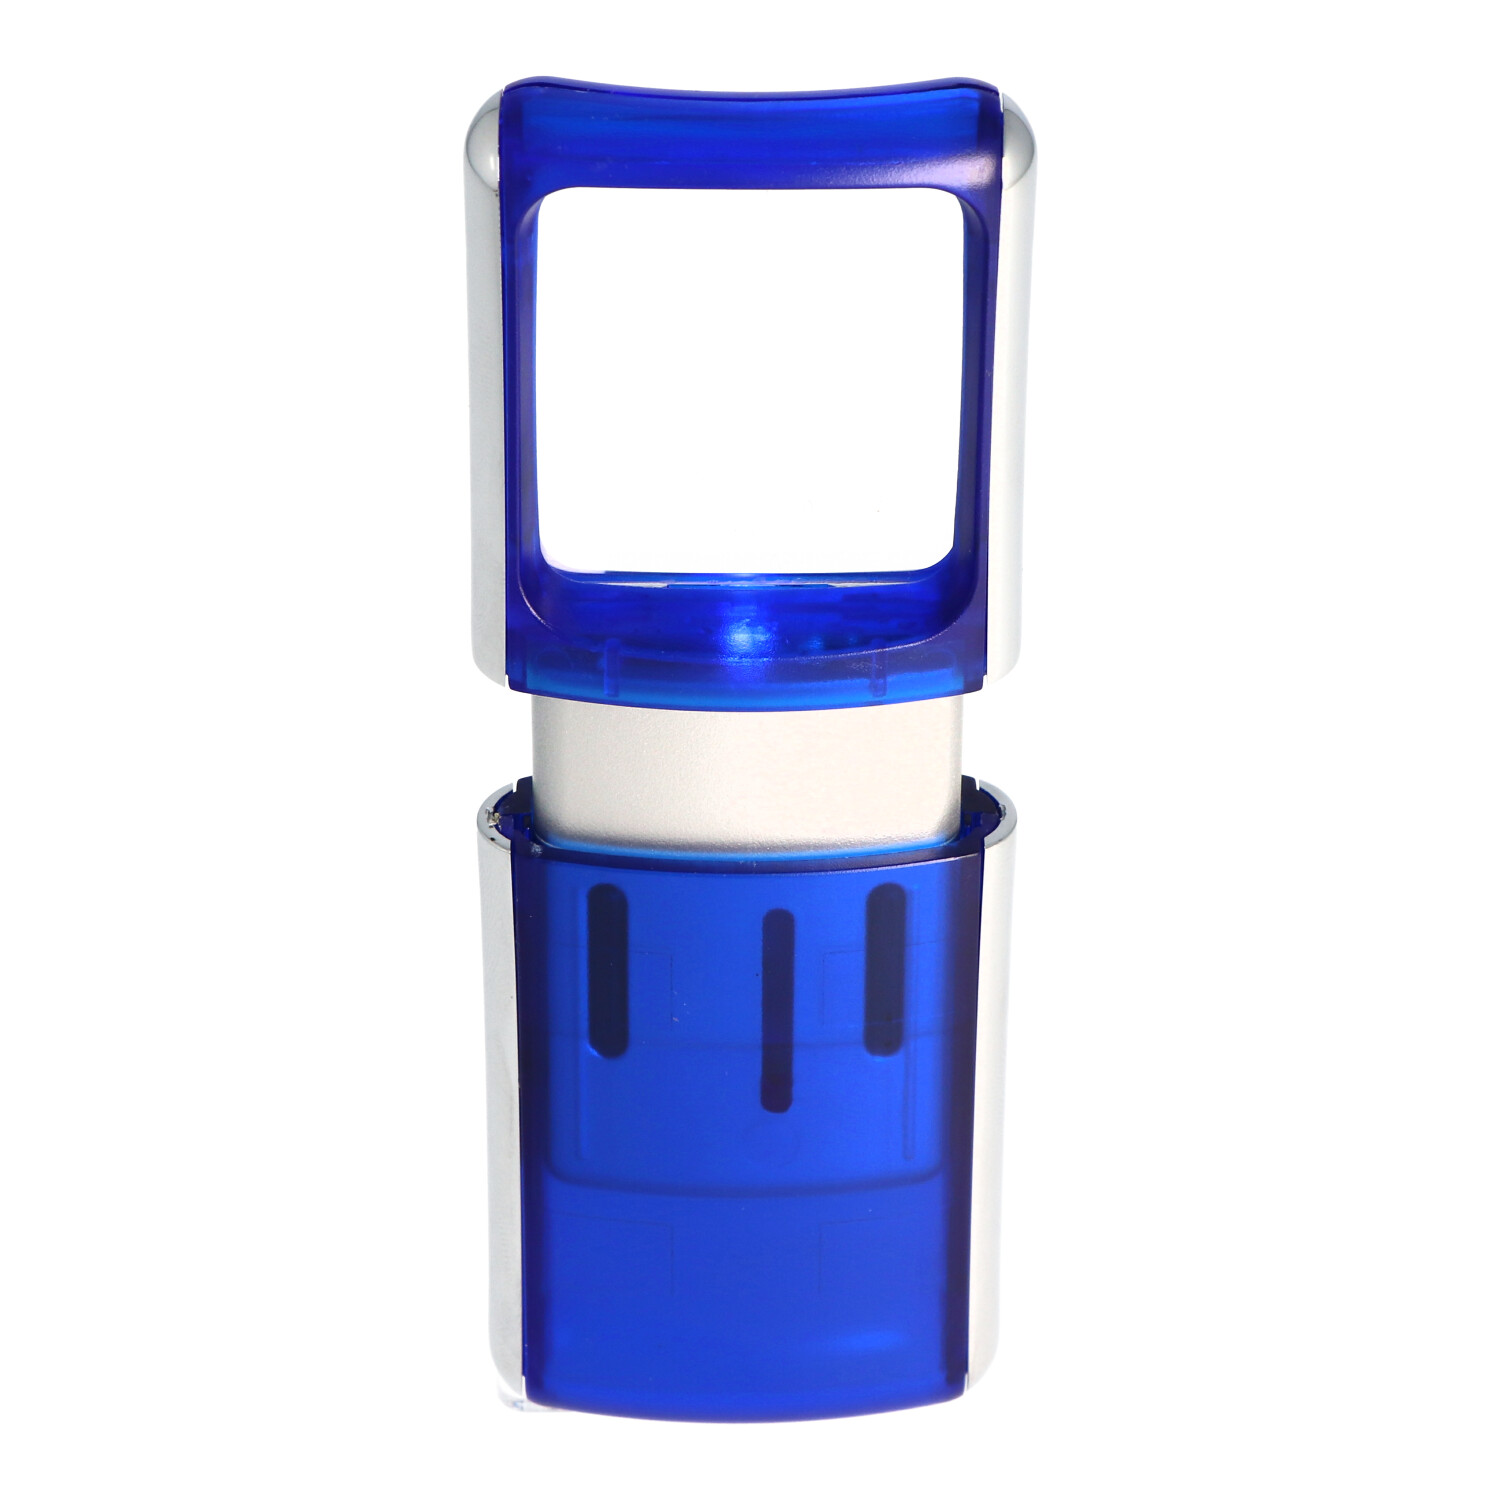 Lupe mit LED-Beleuchtung und 3fach Vergrösserung Farbe blau, in Blisterverpackung